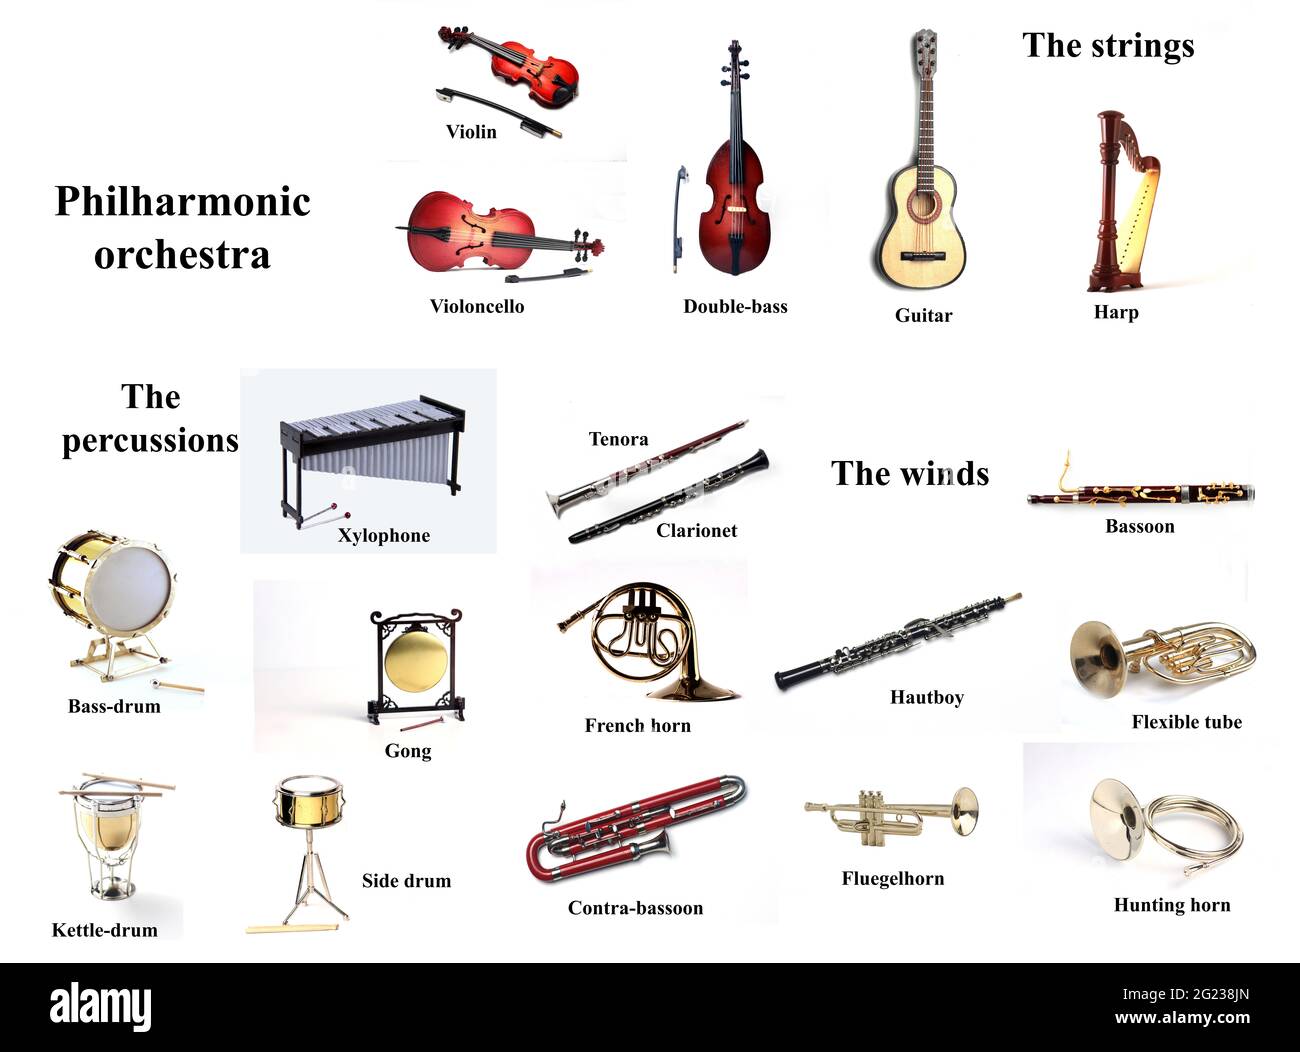 Lehrplakat für die Schule - philharmonische Orchester-Instrumente isoliert  auf weißem Hintergrund Stockfotografie - Alamy